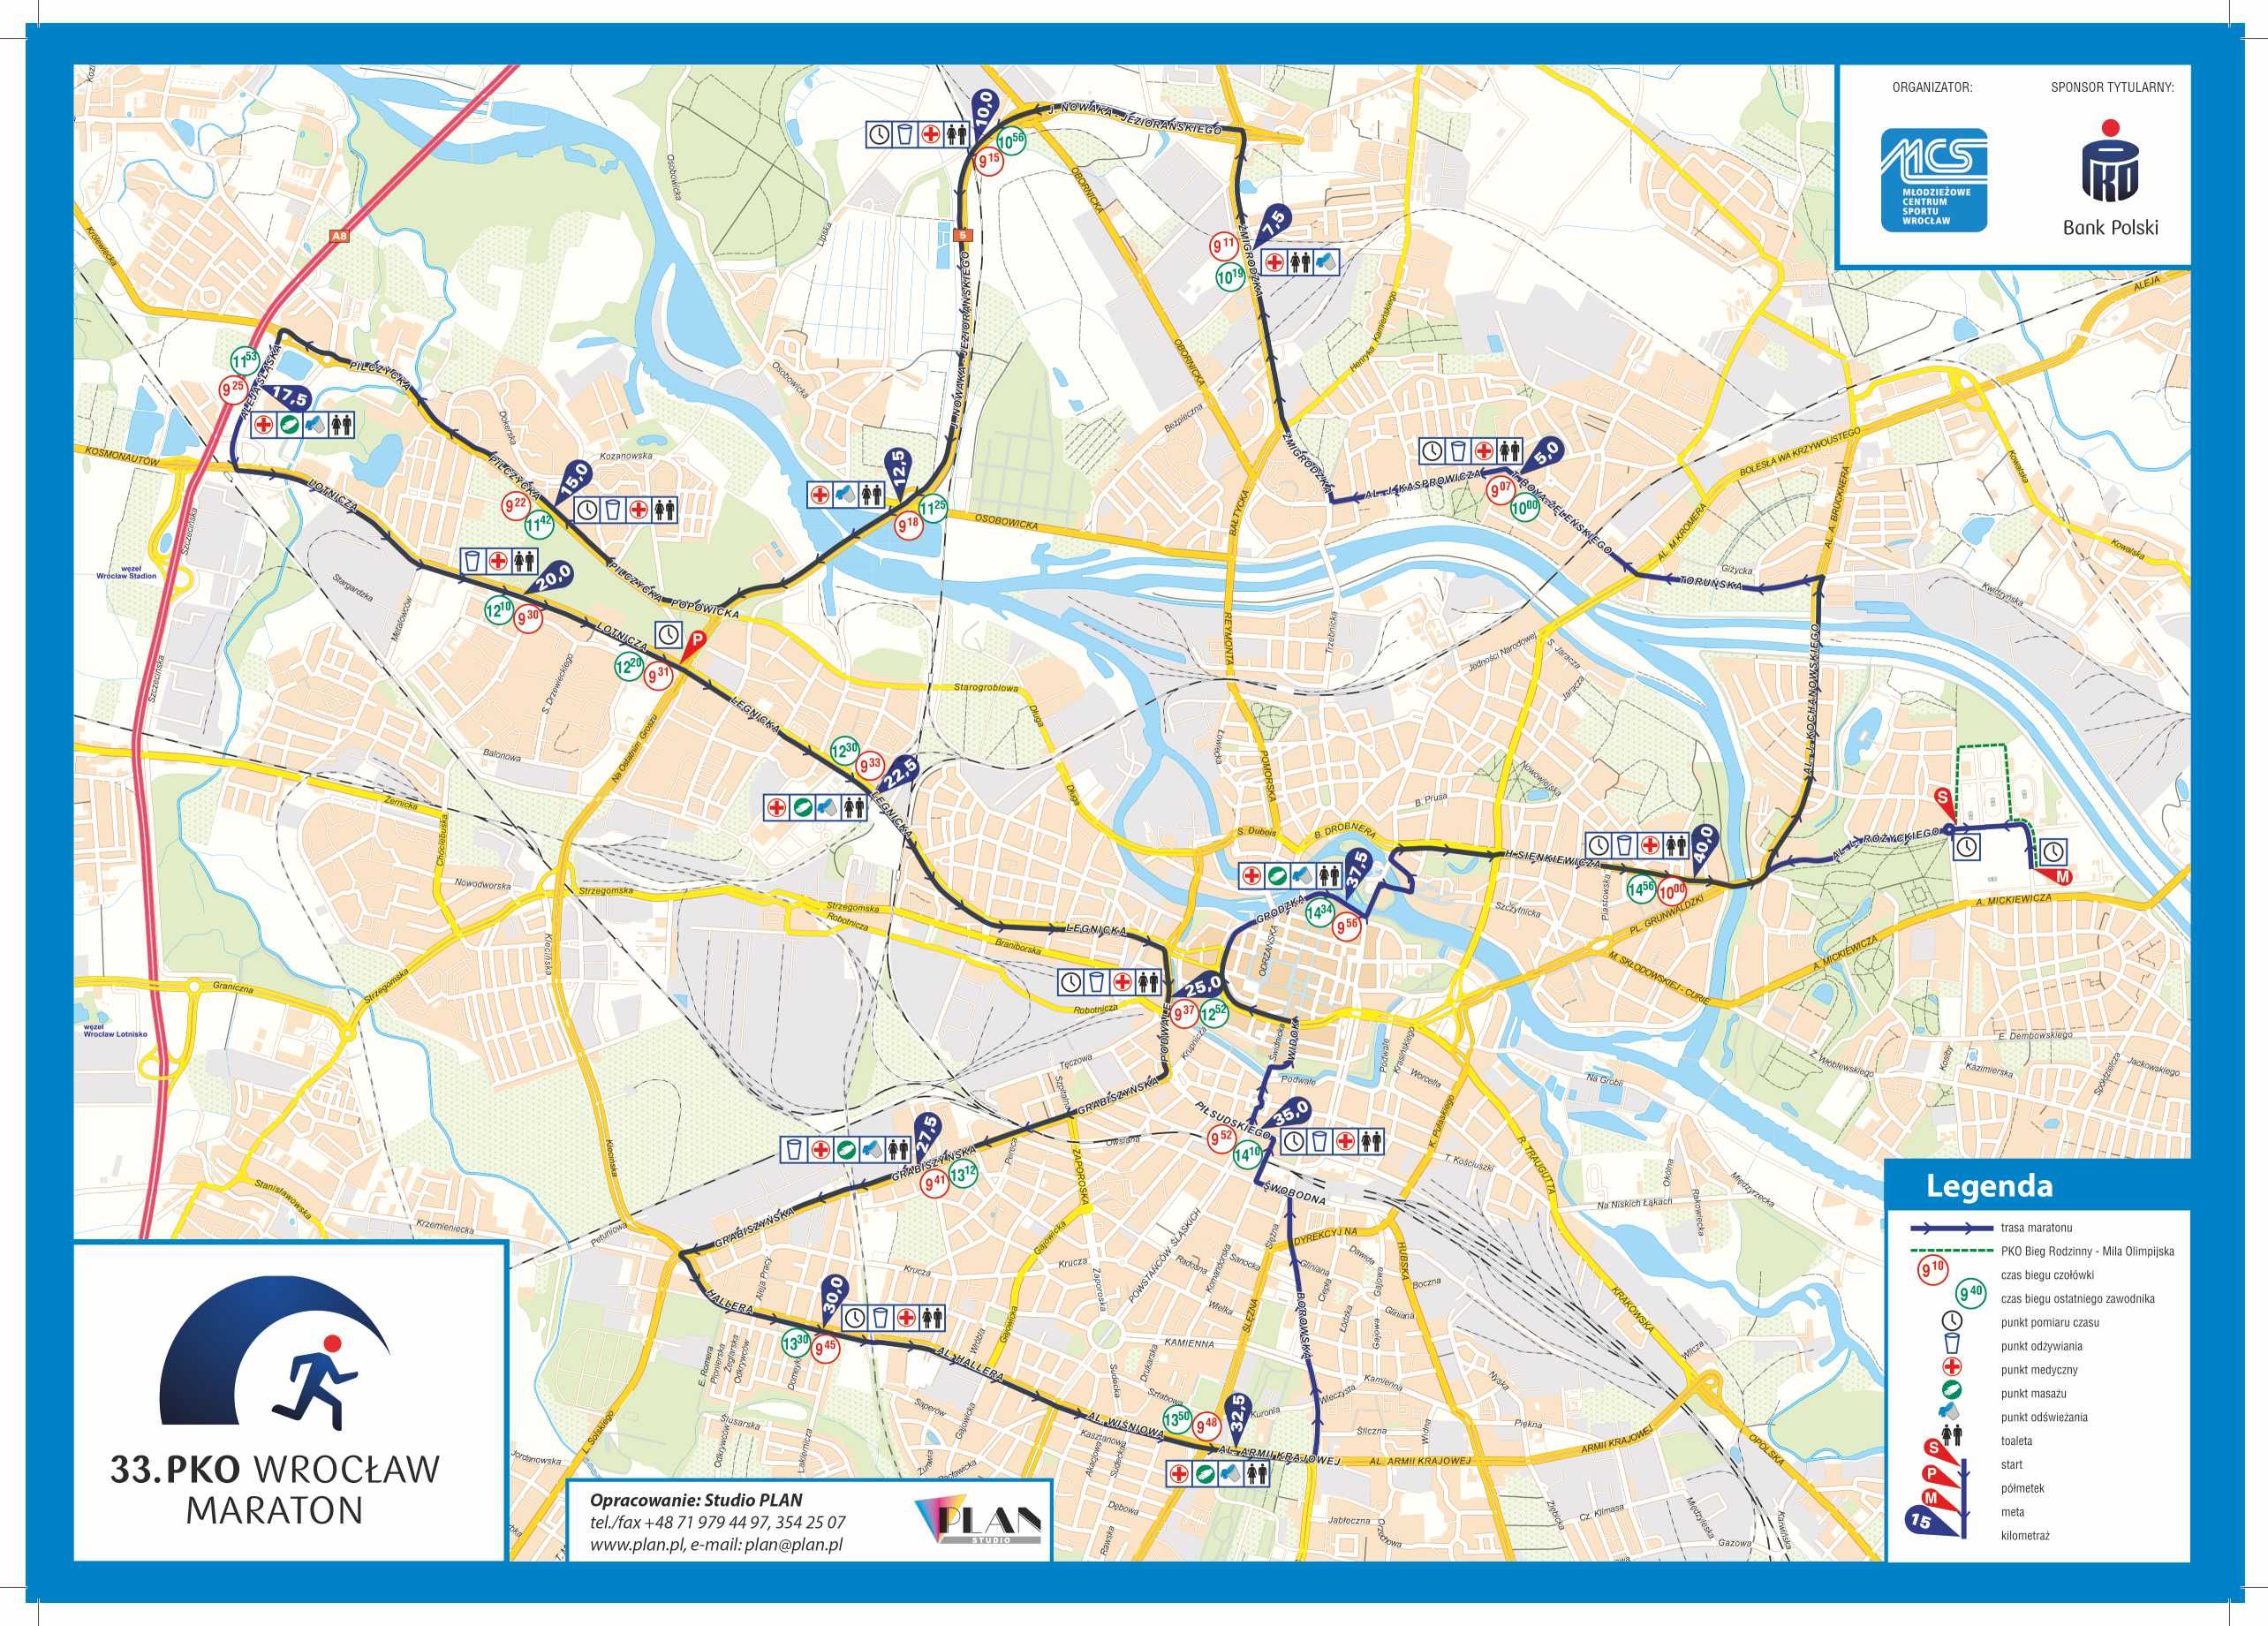 Poznaj trasę wrocławskiego maratonu [MAPA, PROFIL TRASY], mat. prasowe